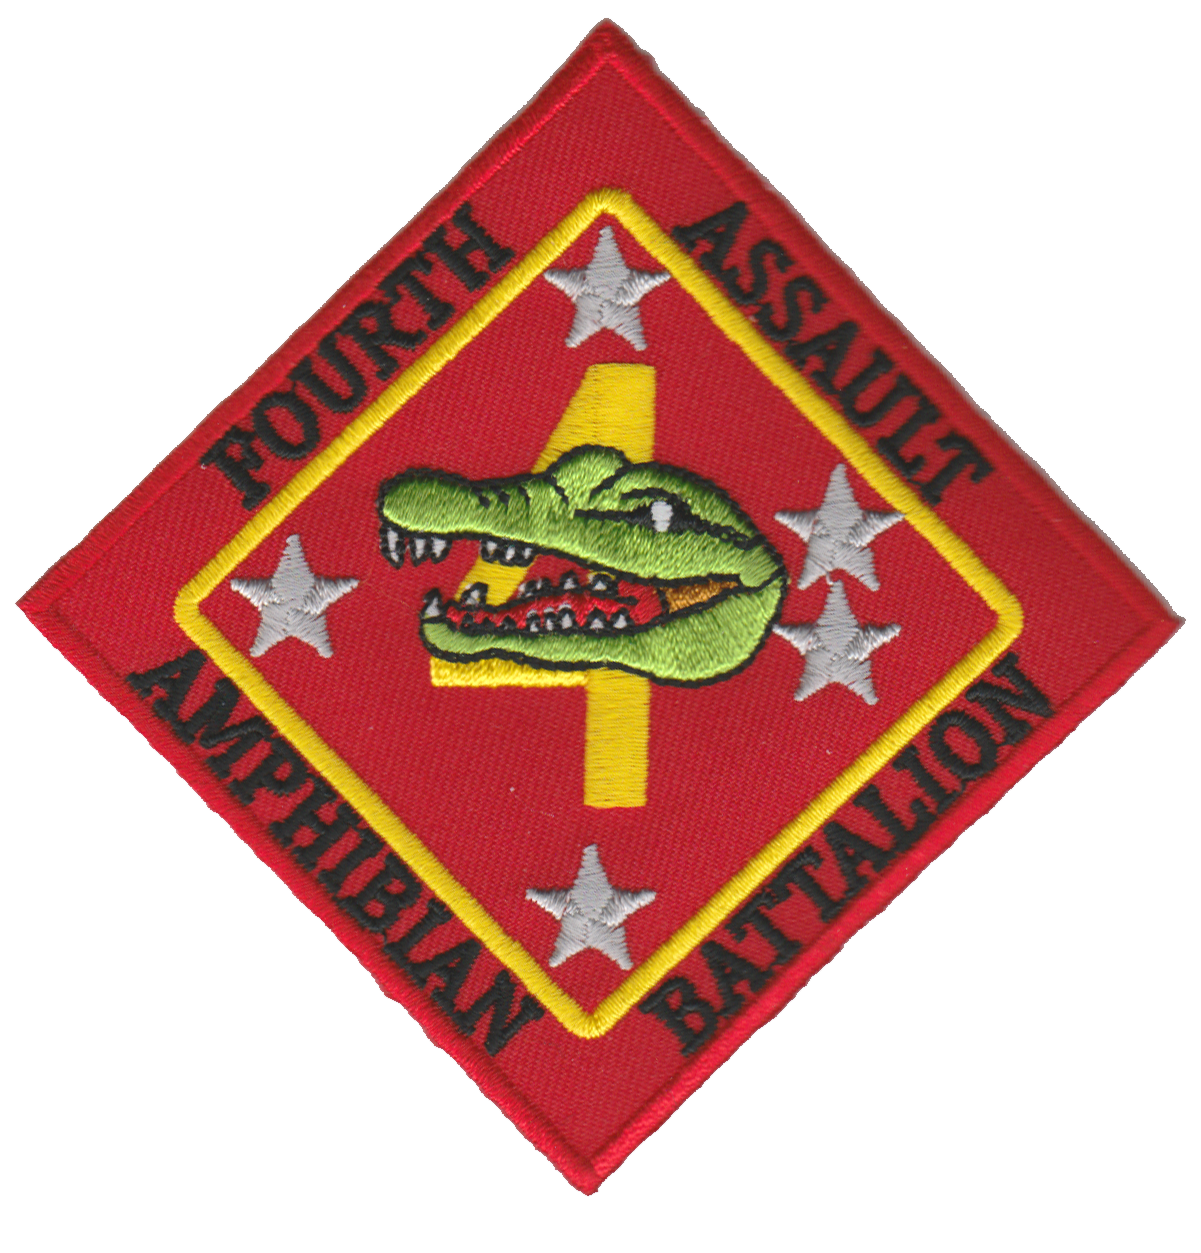 4th Amphibian Assault Battalion USMC Patch